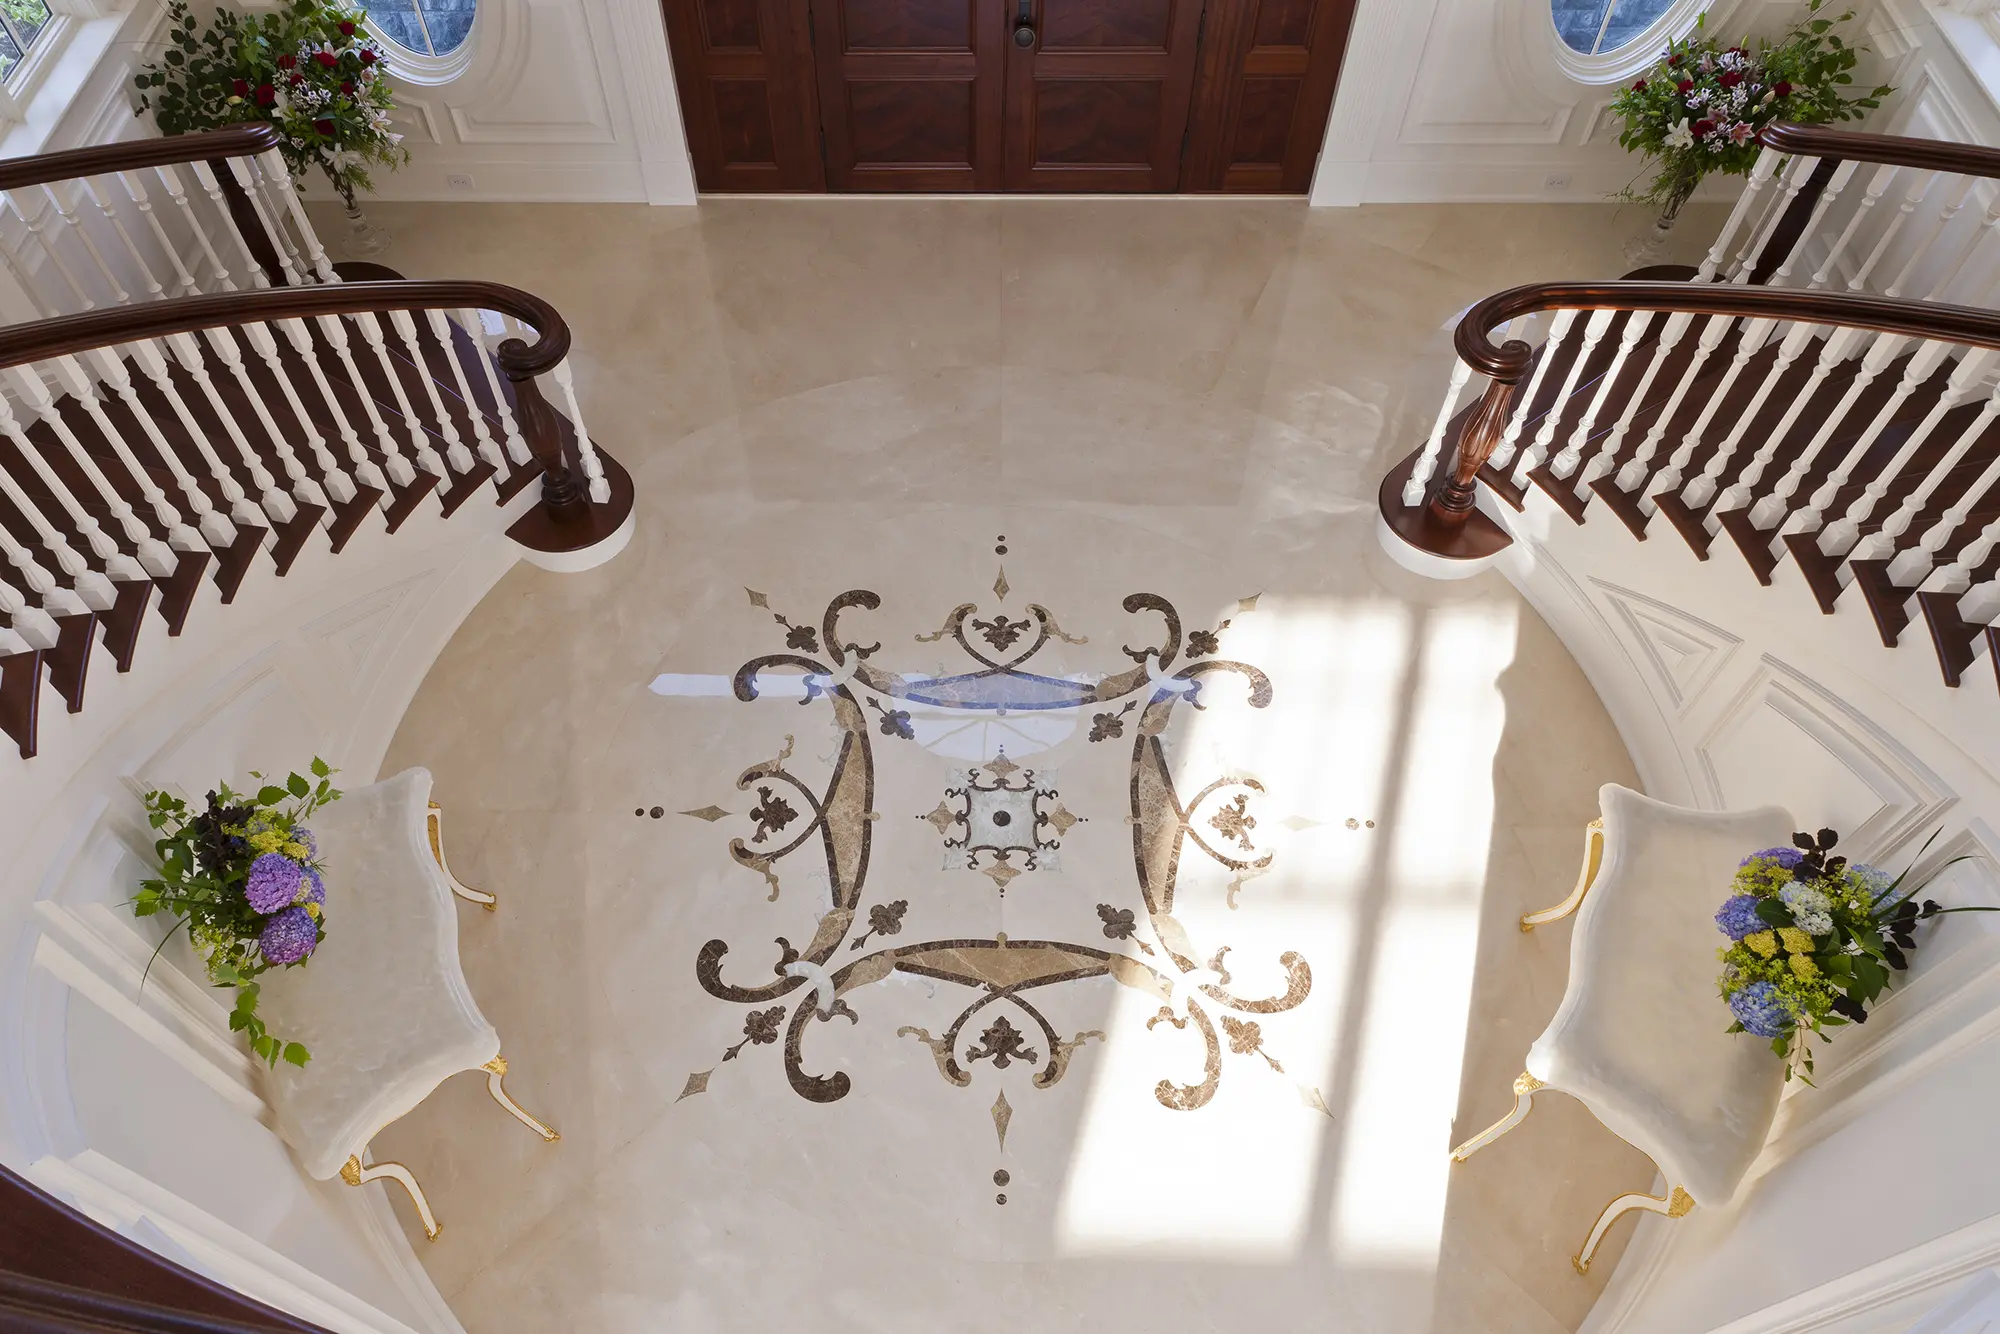 Custom tile flooring detail in entryway